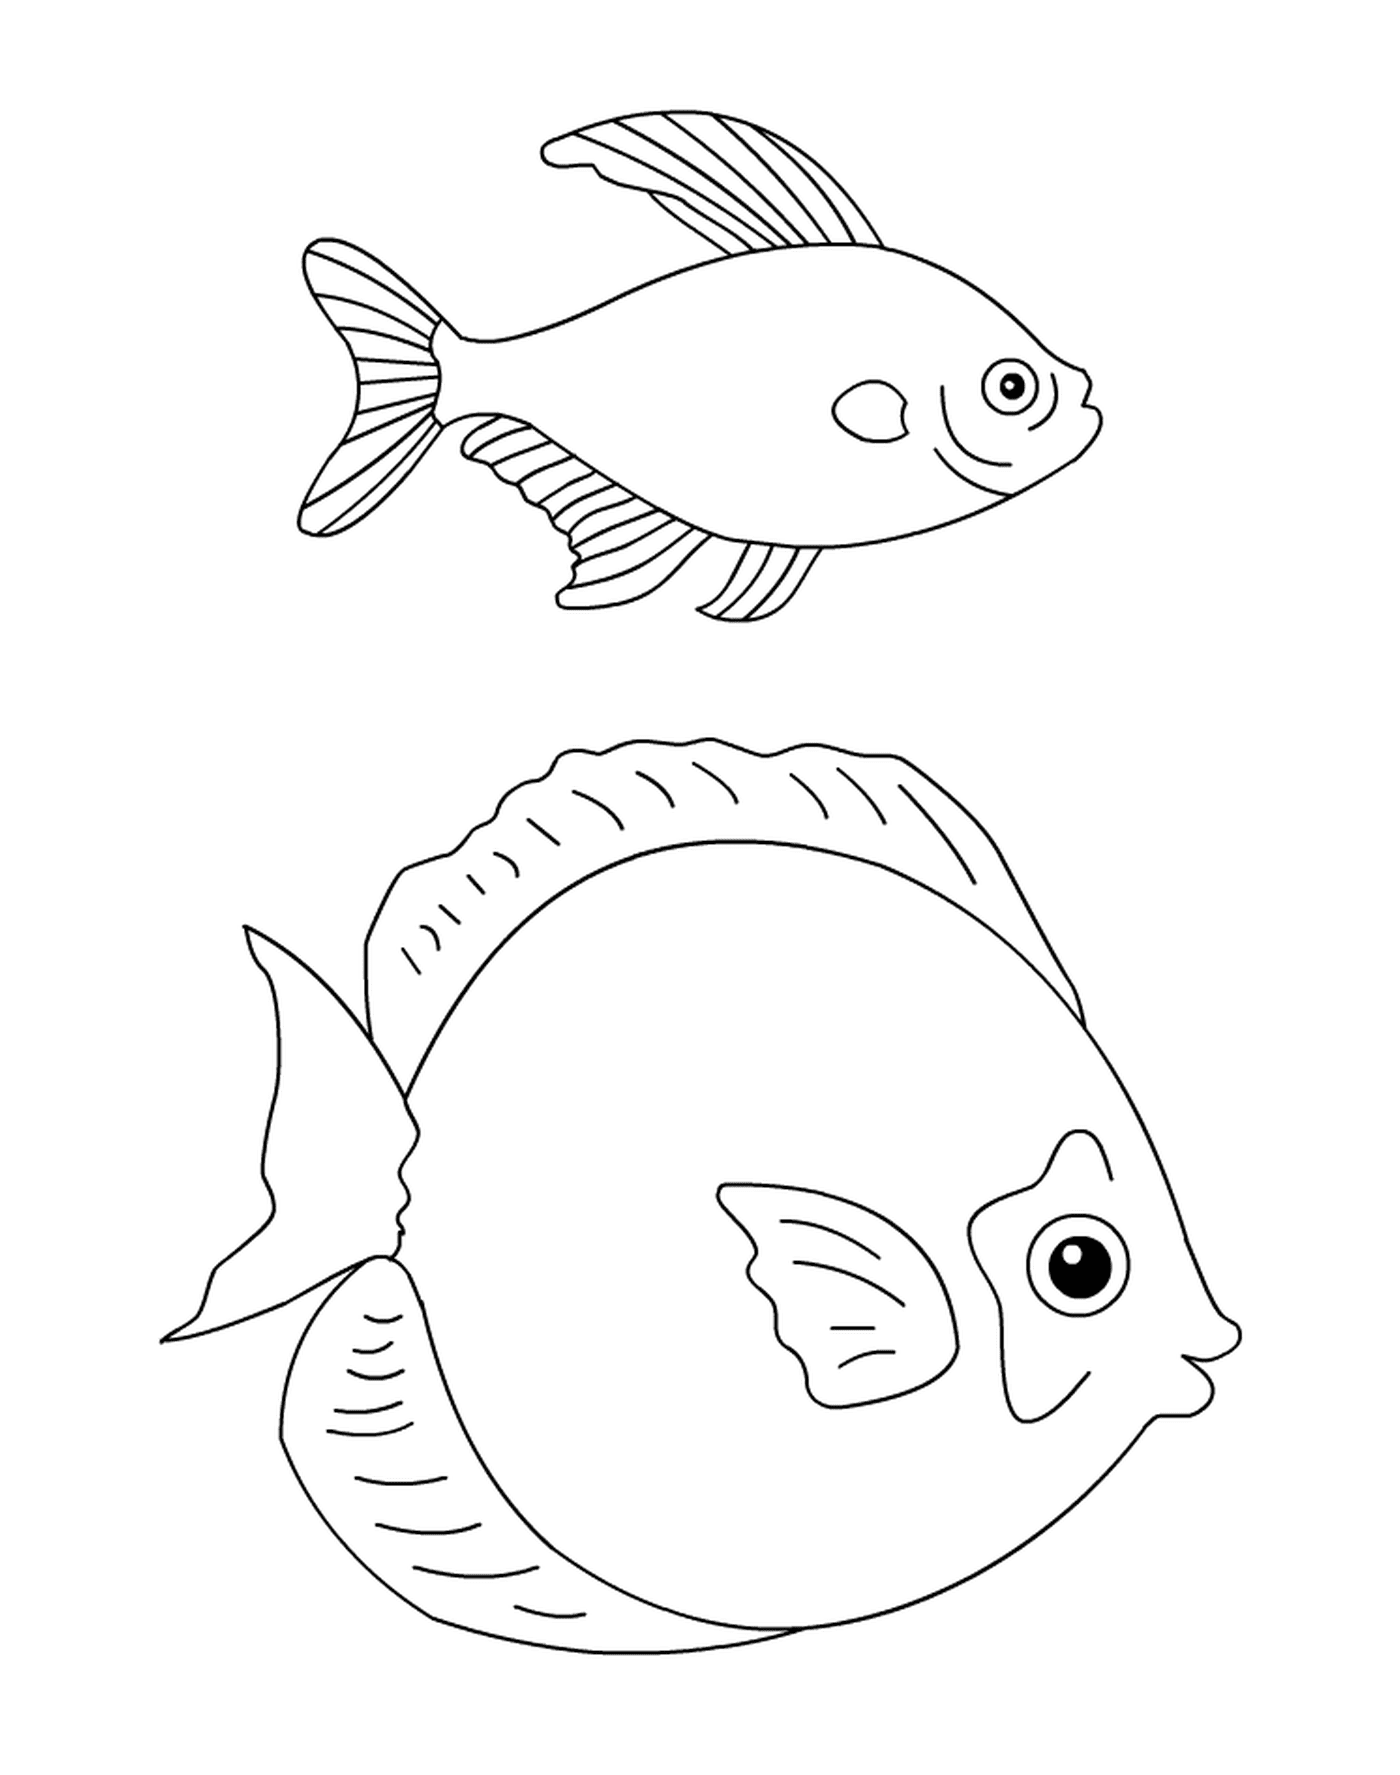   Un poisson et un animal dessinés ensemble 